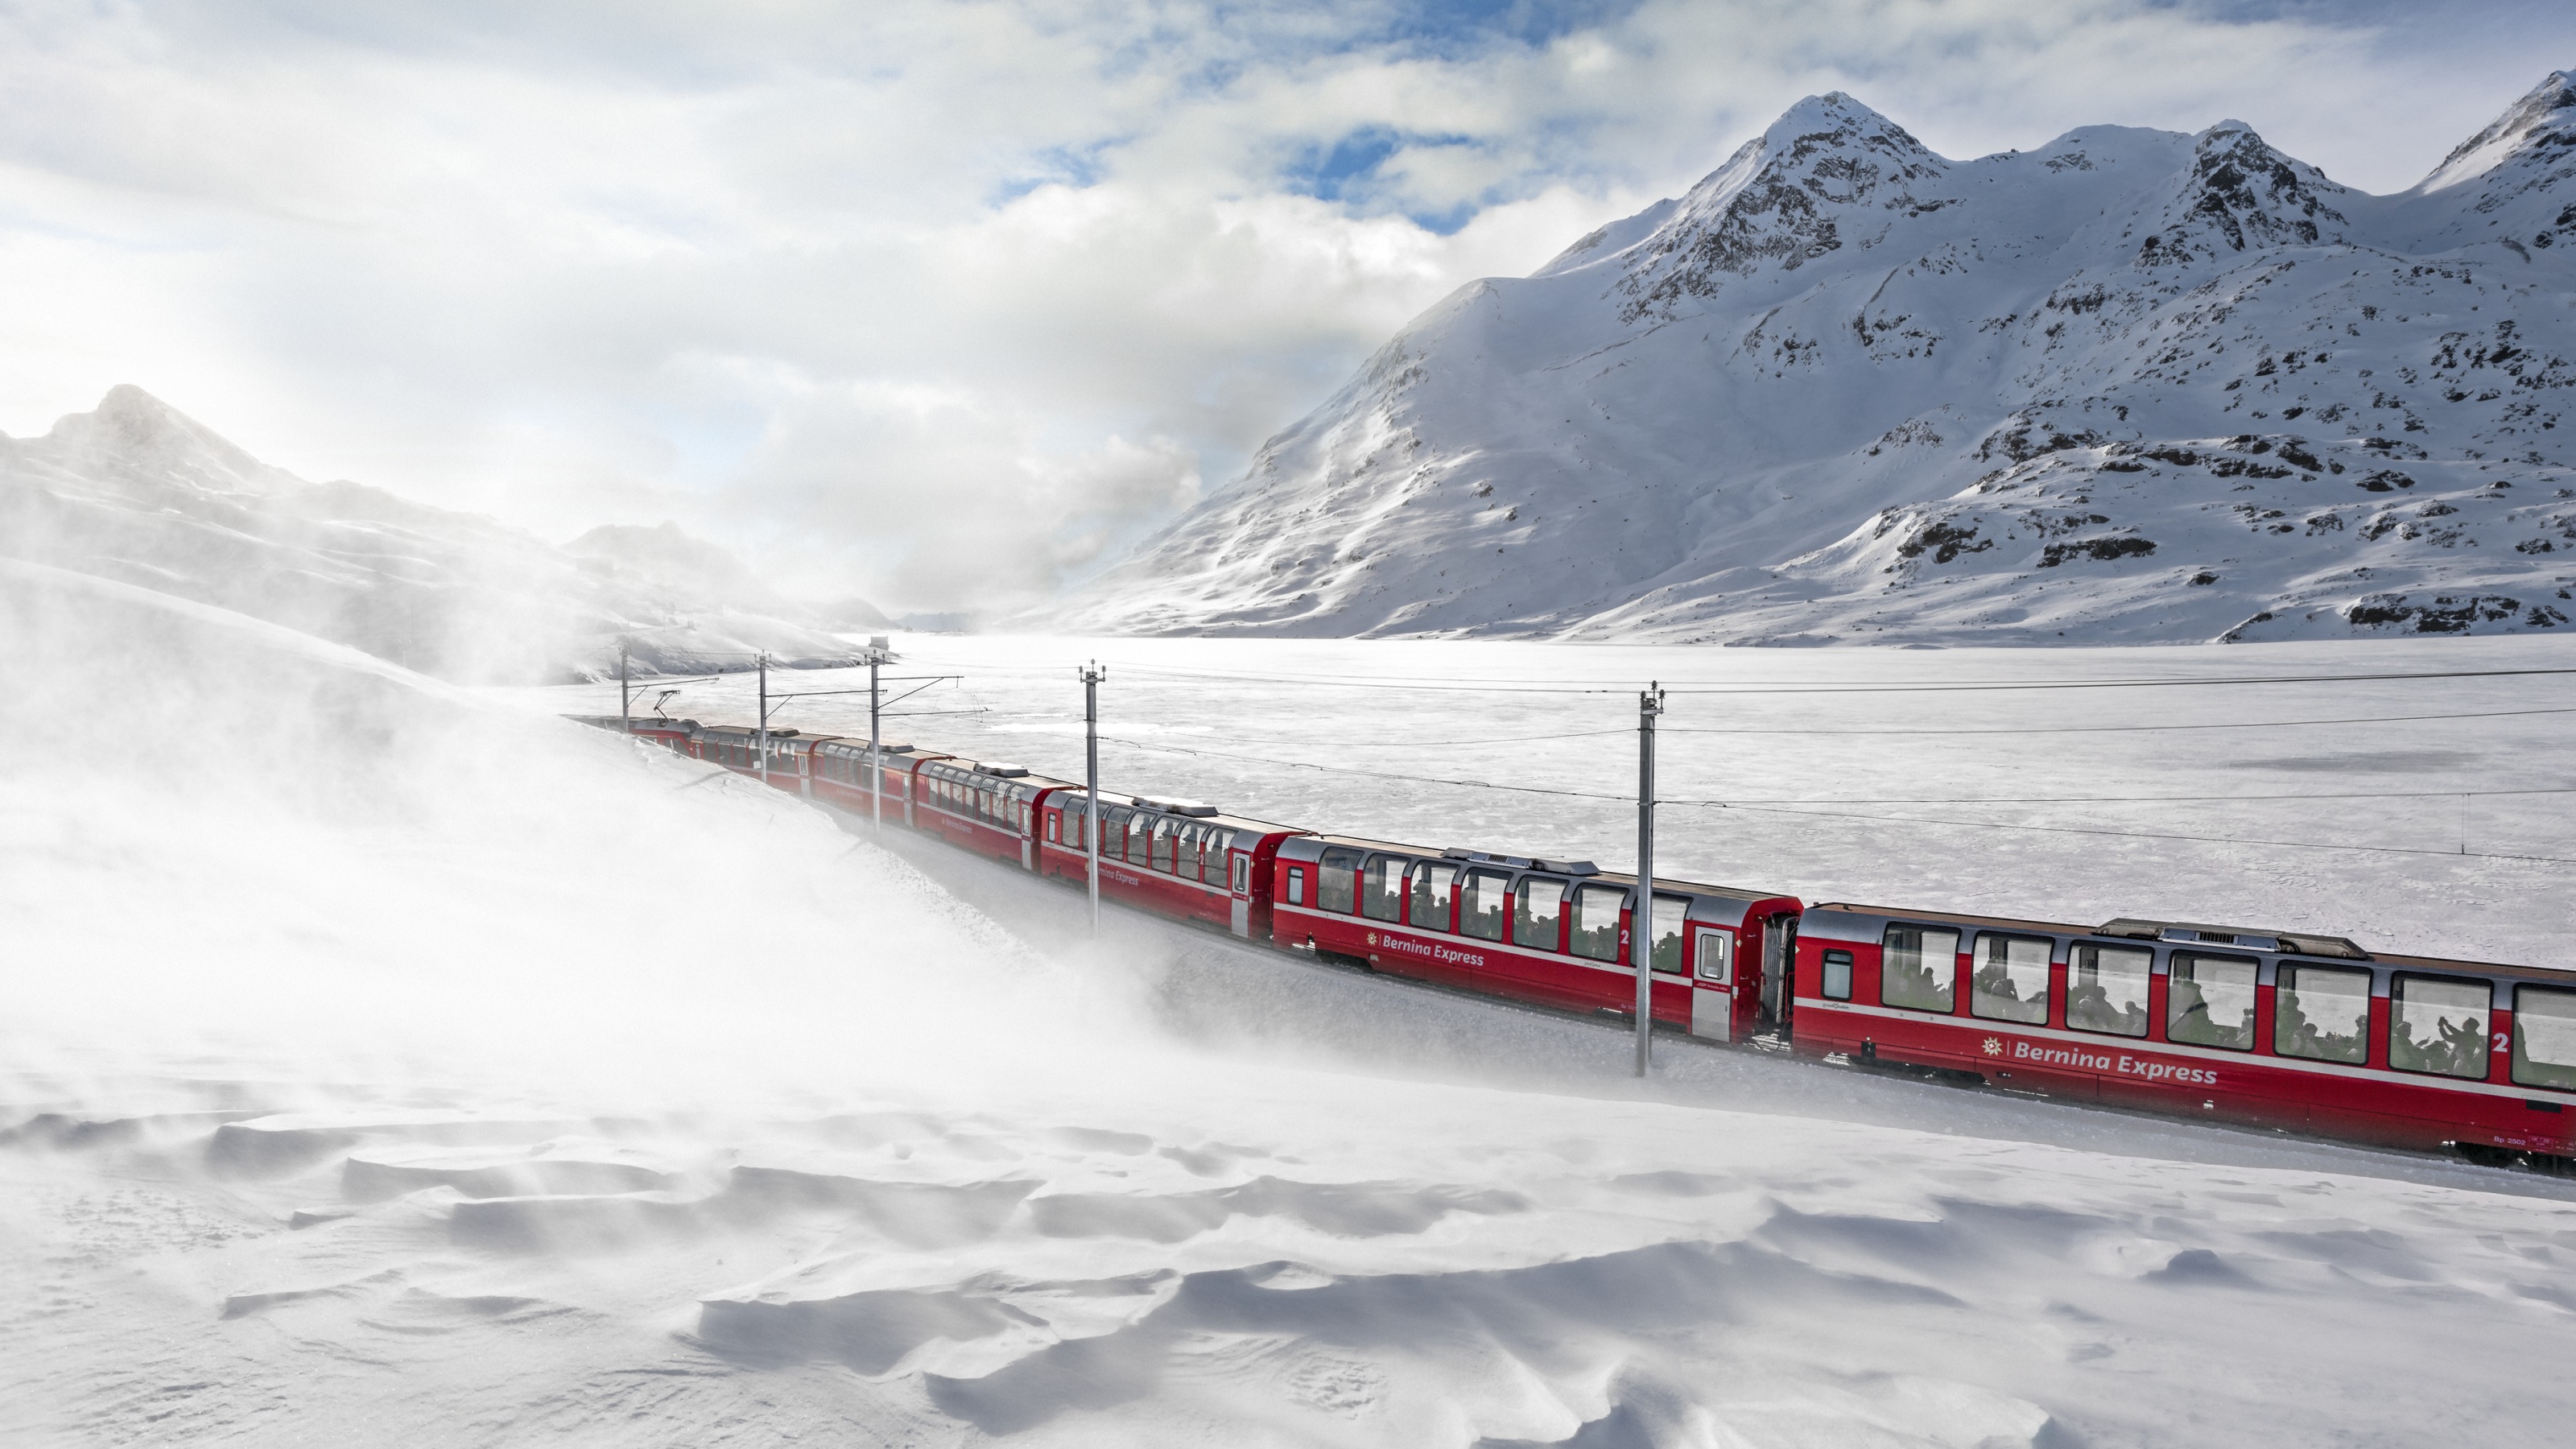 Grand Train Tour of Switzerland Switzerland Tourism